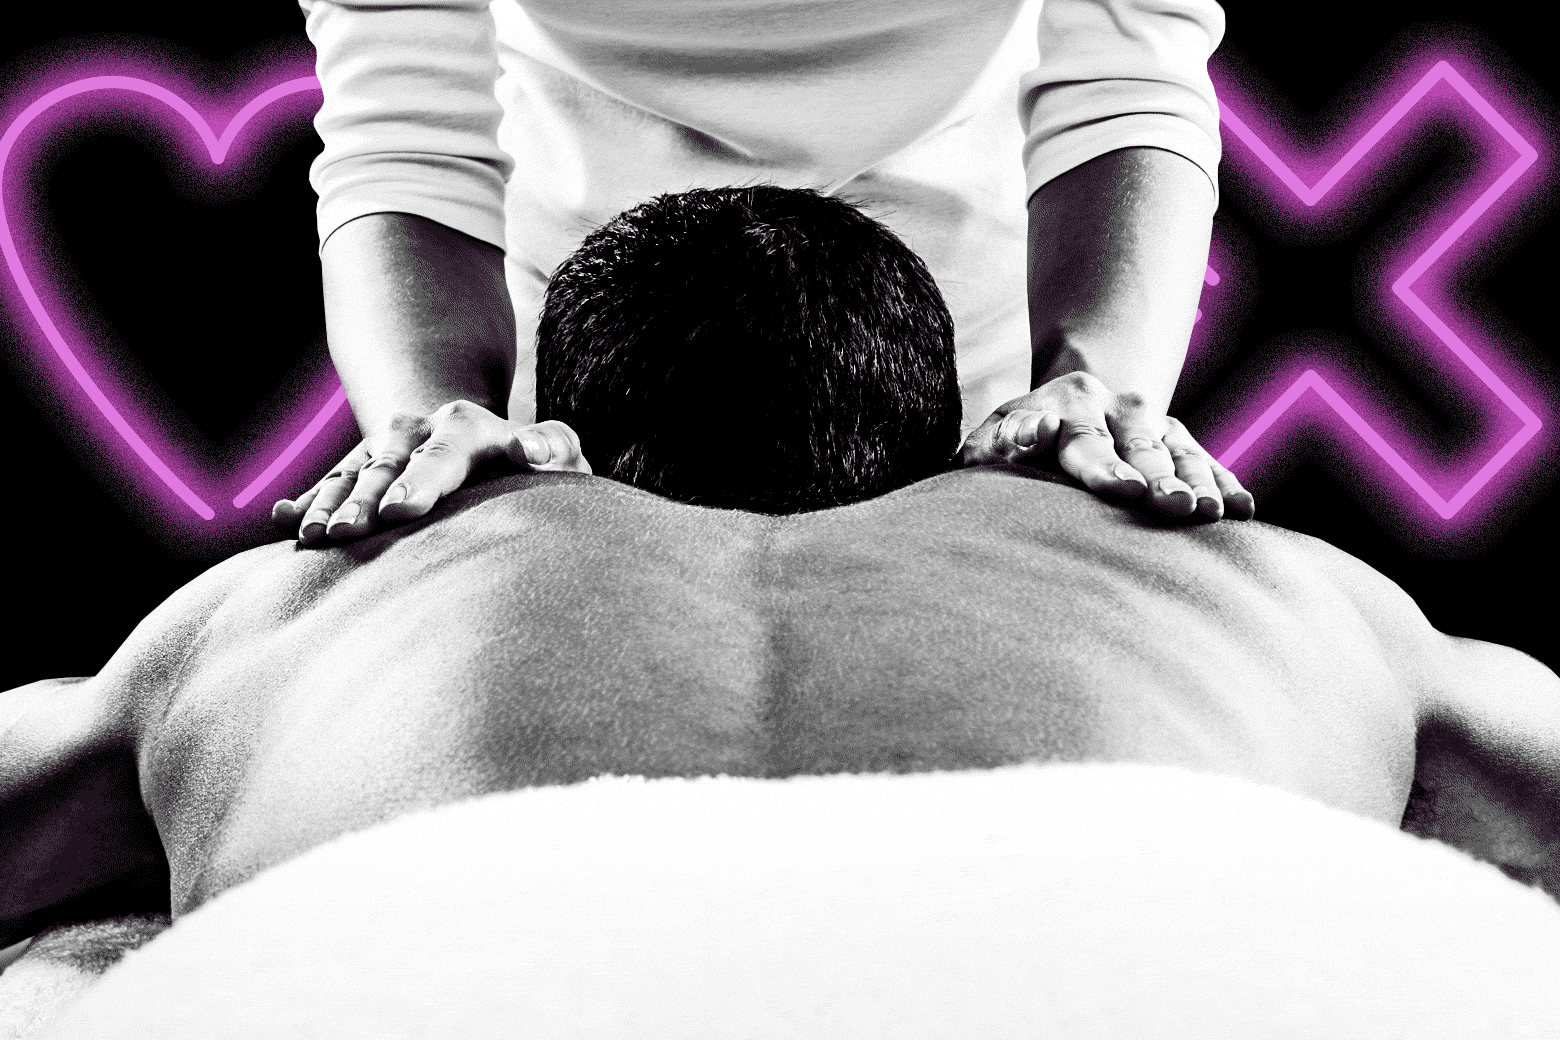 Husband gives massage time butt plug